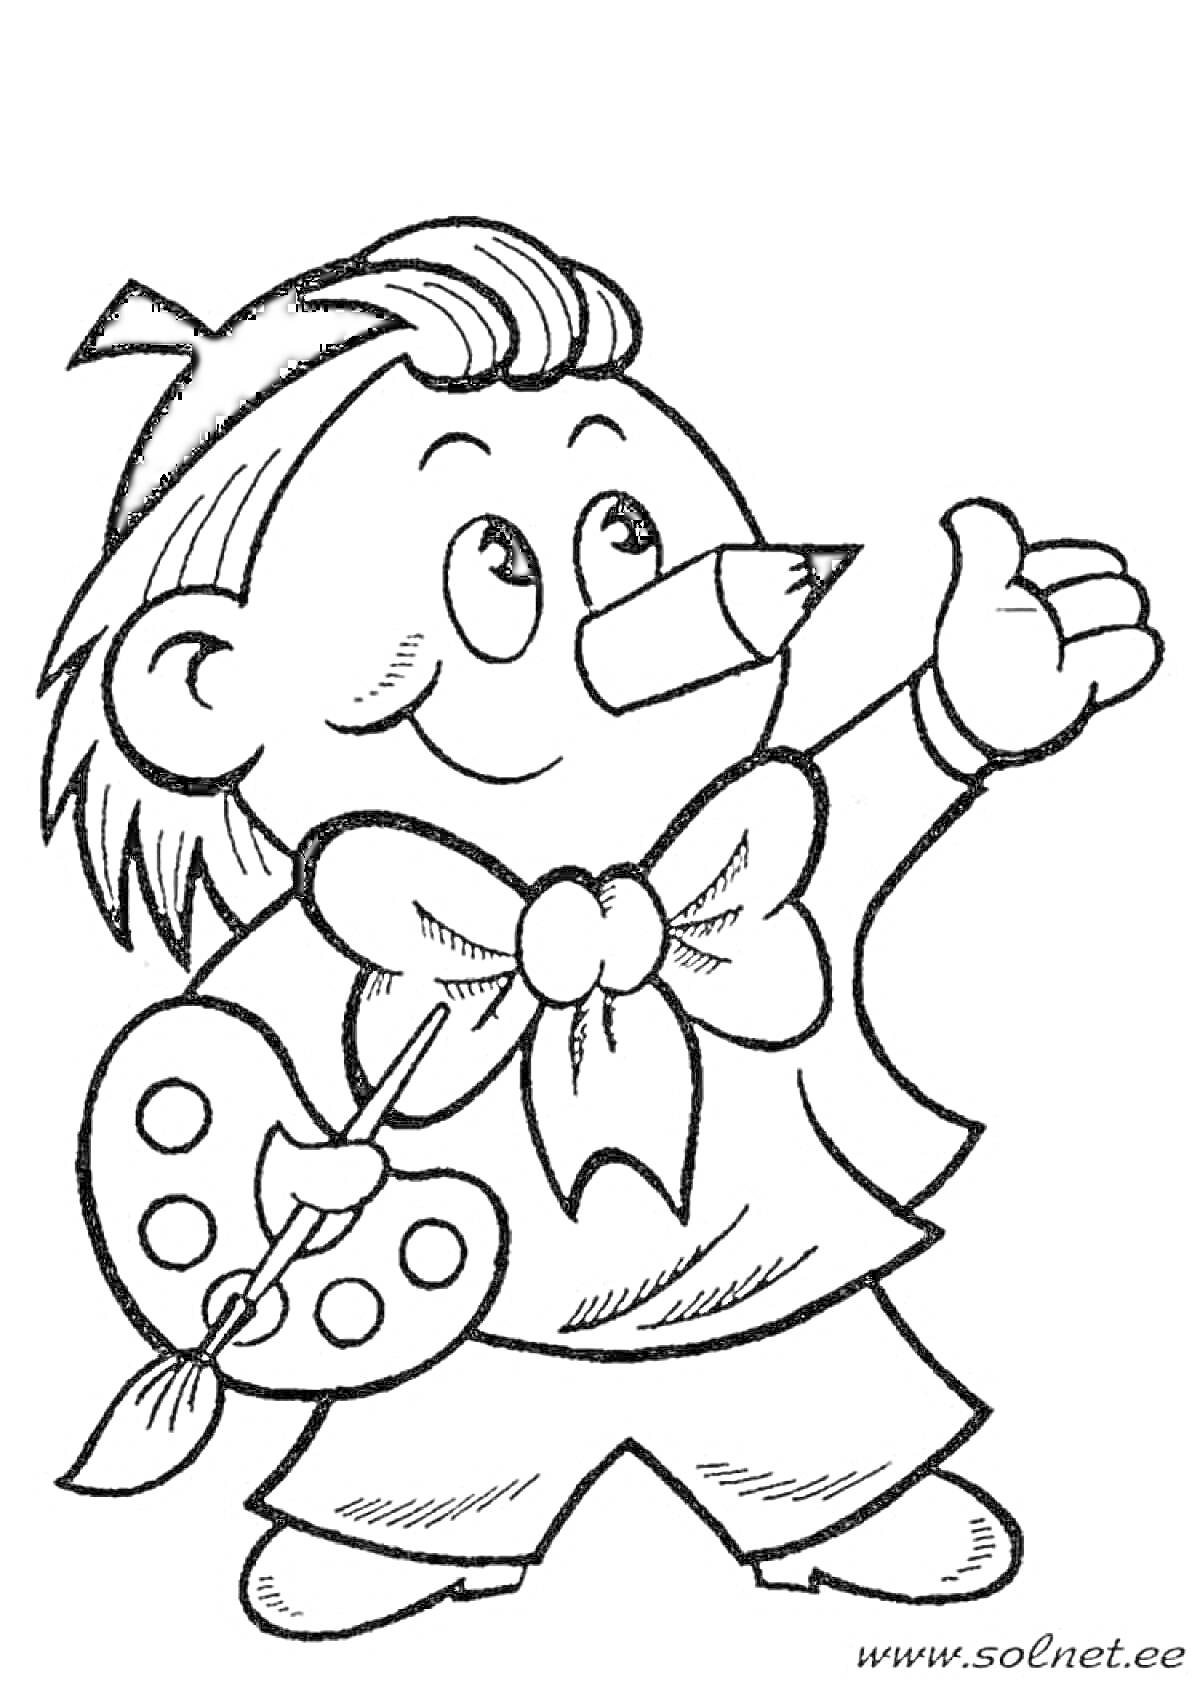 Раскраска Мальчик с карандашом вместо носа, в костюме с большим бантом, держит кисть и палитру